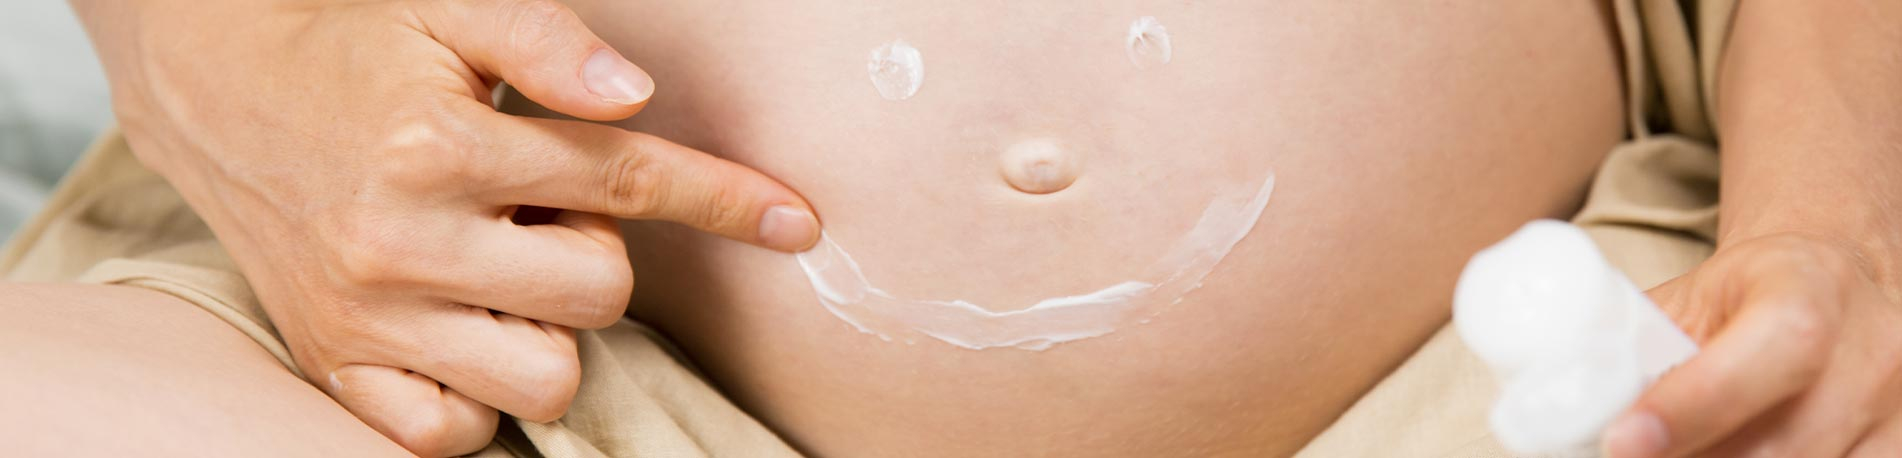 Quel est le meilleur produit anti vergeture grossesse ? 